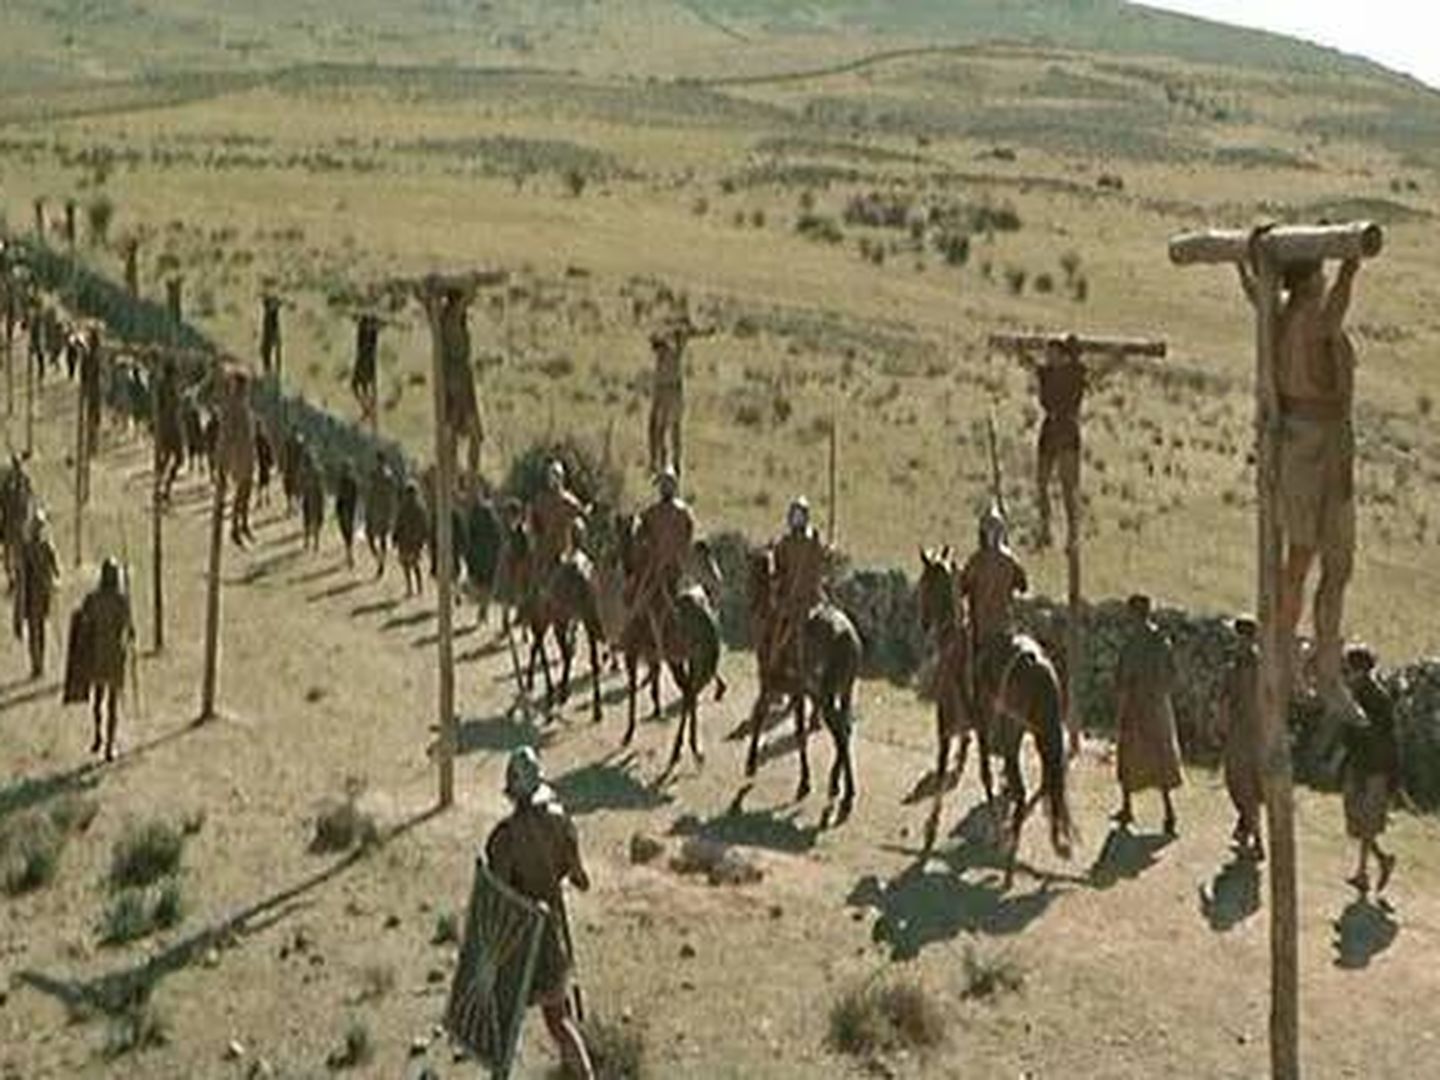 Fortograma de la película 'Espartaco' (1960), con los participantes en la revuelta  de esclavos crucificados en la Via Appia.